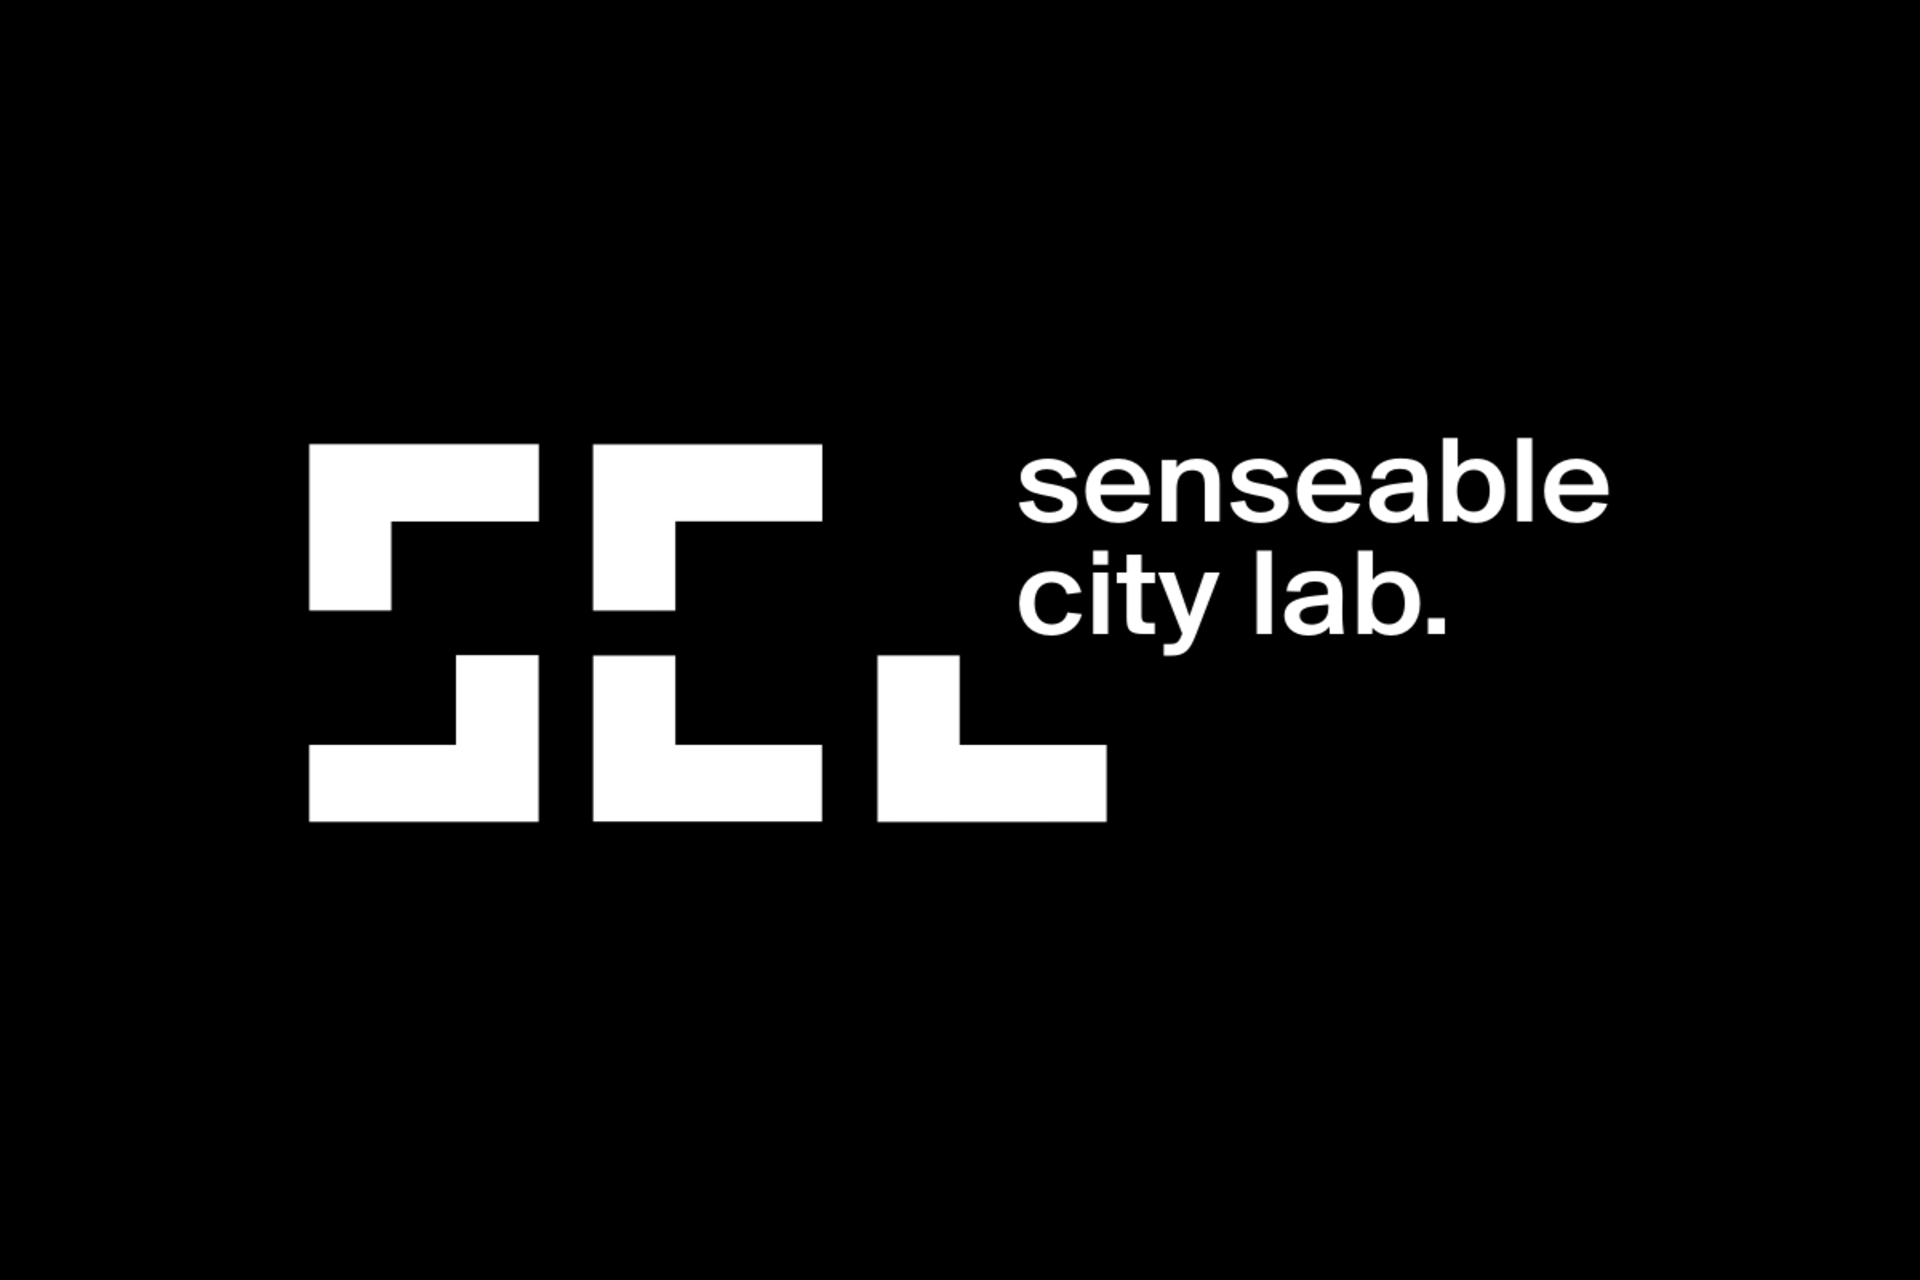 Massachusetts Institute of Technology: o MIT Senseable City Lab chegará ao Bologna Tecnopolo para imaginar as cidades do futuro graças à colaboração com a região Emilia-Romagna